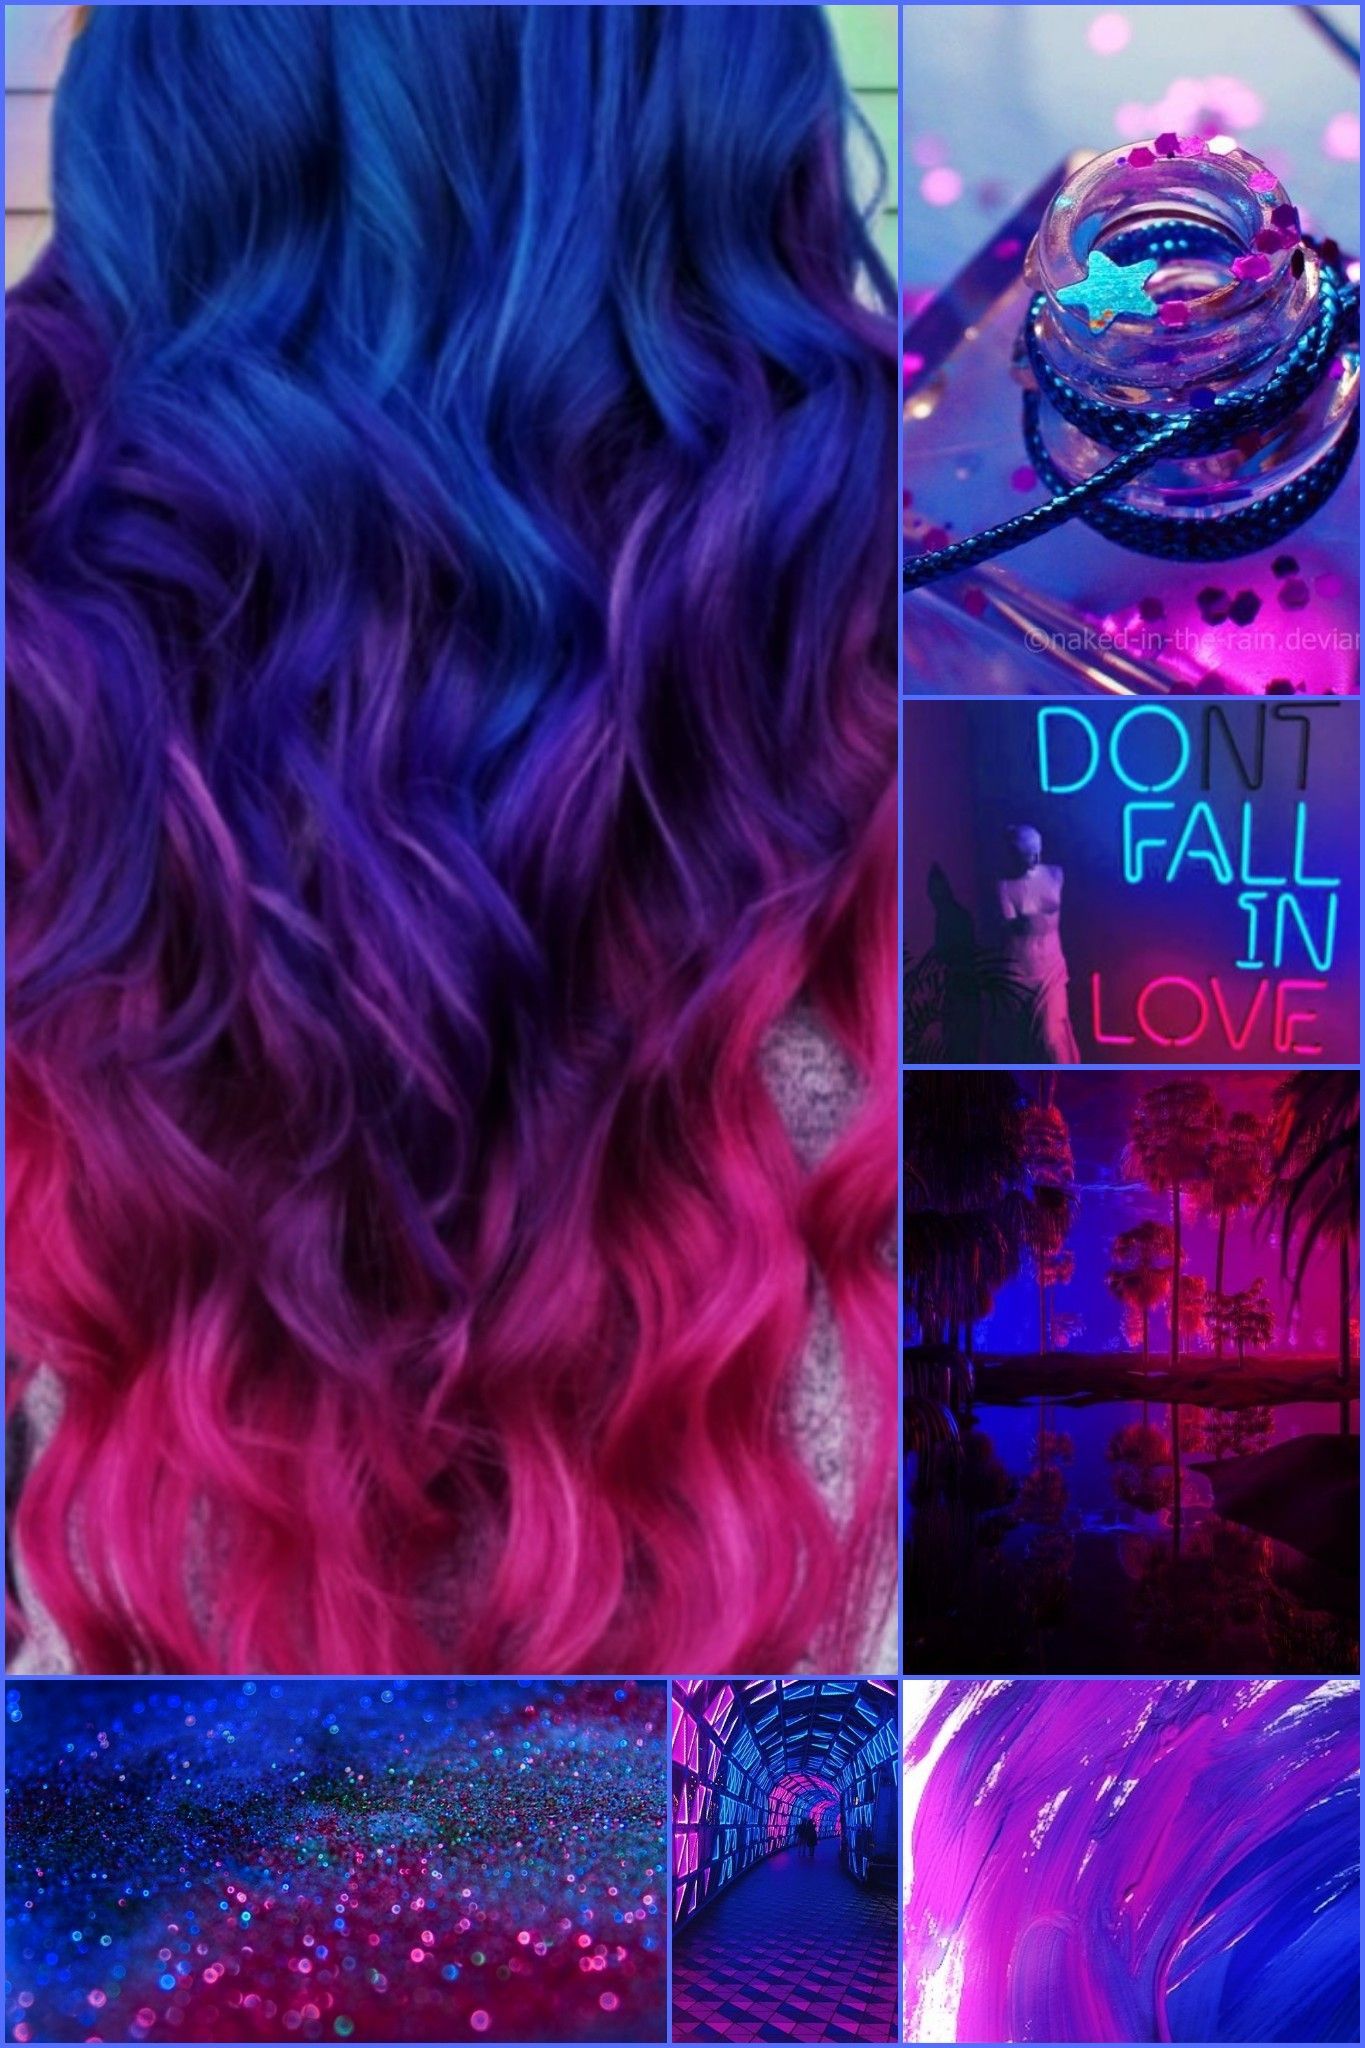 13 mermaid hair Color ideas